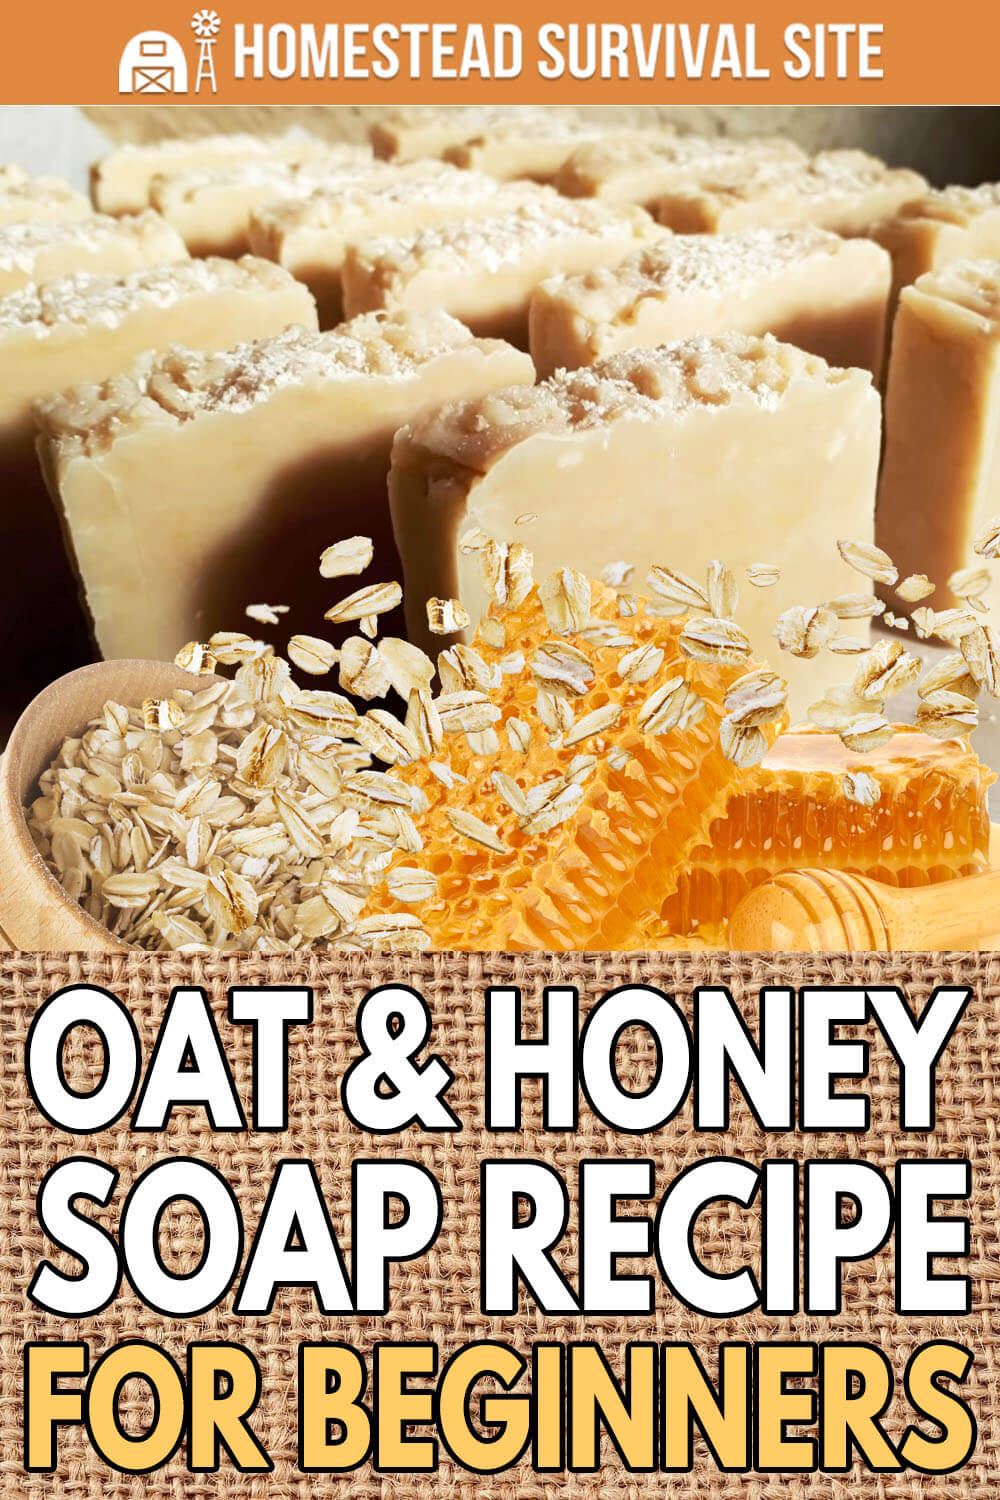 Oat & Honey Soap Recipe for Beginners